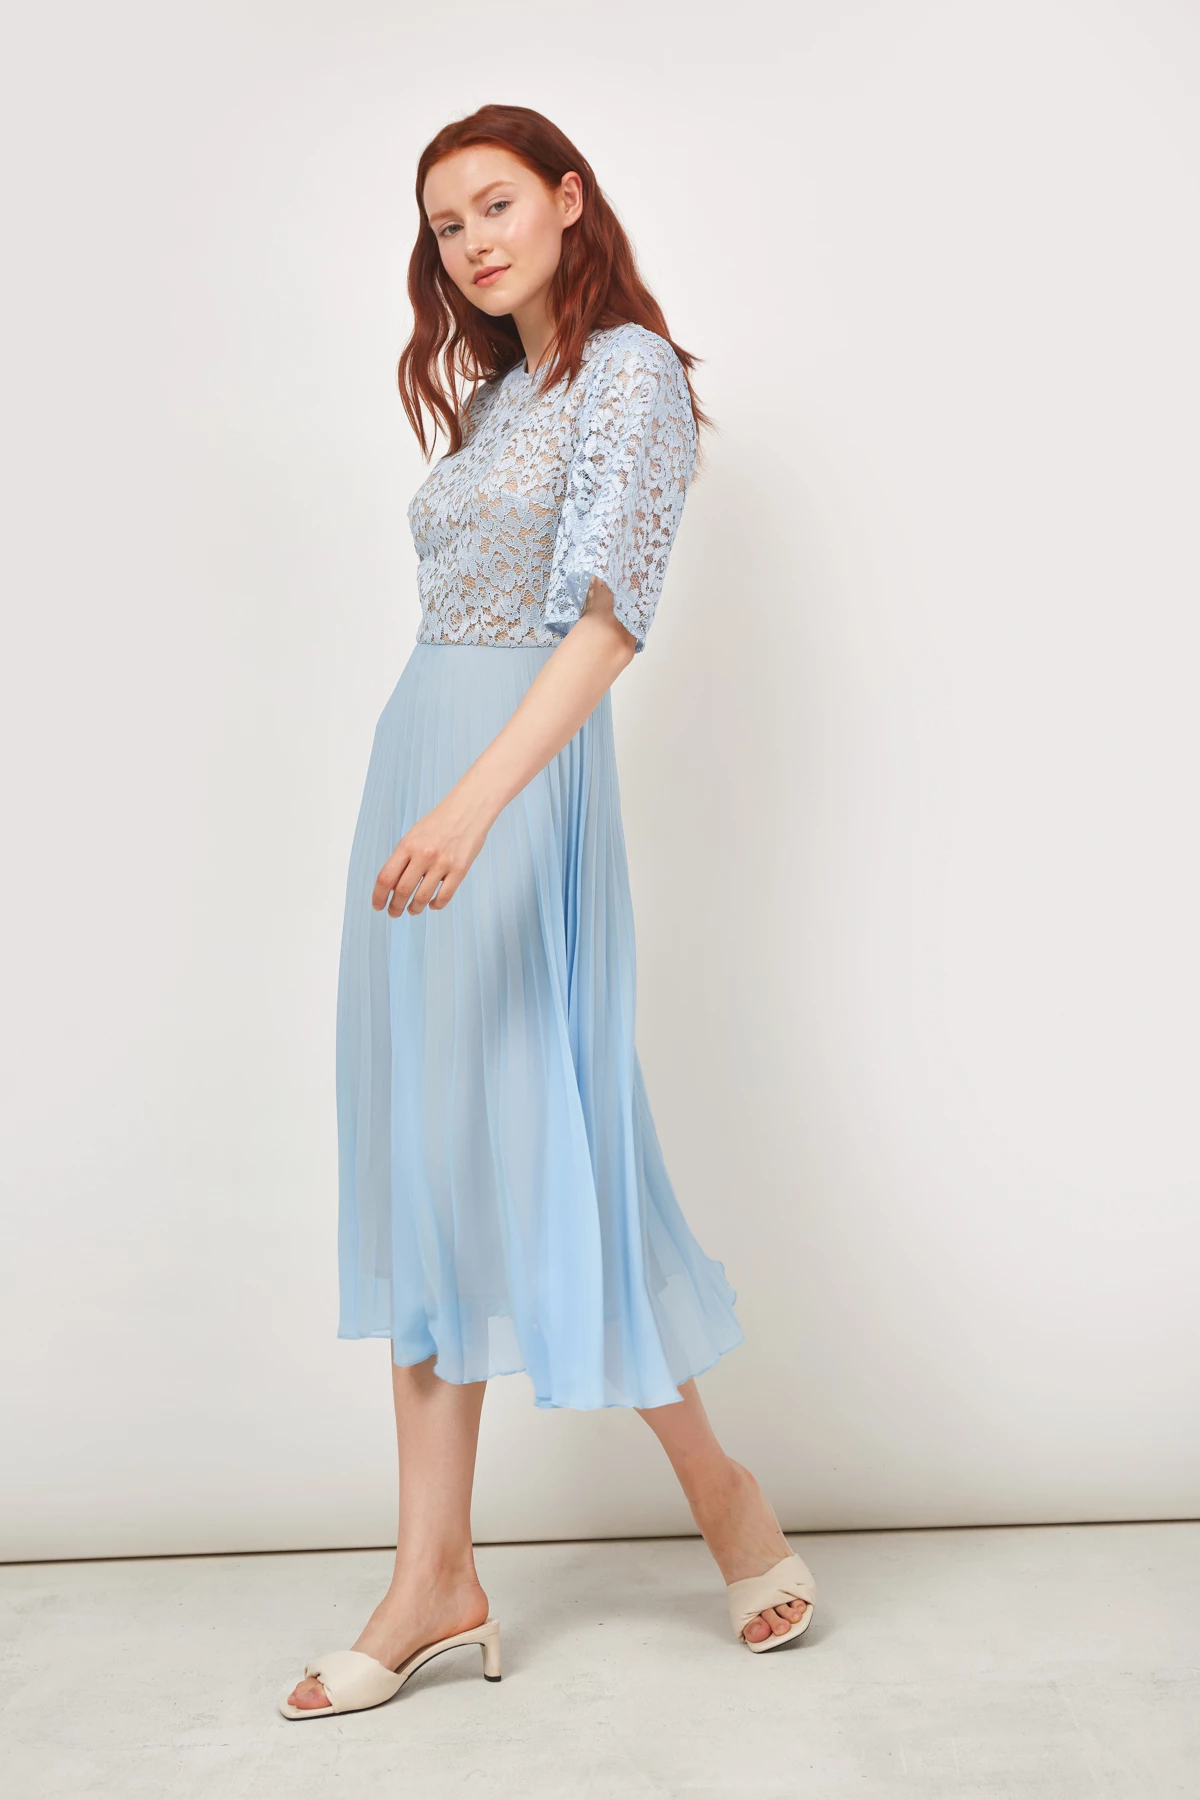 Midi dress in blue lace and chiffon , photo 2